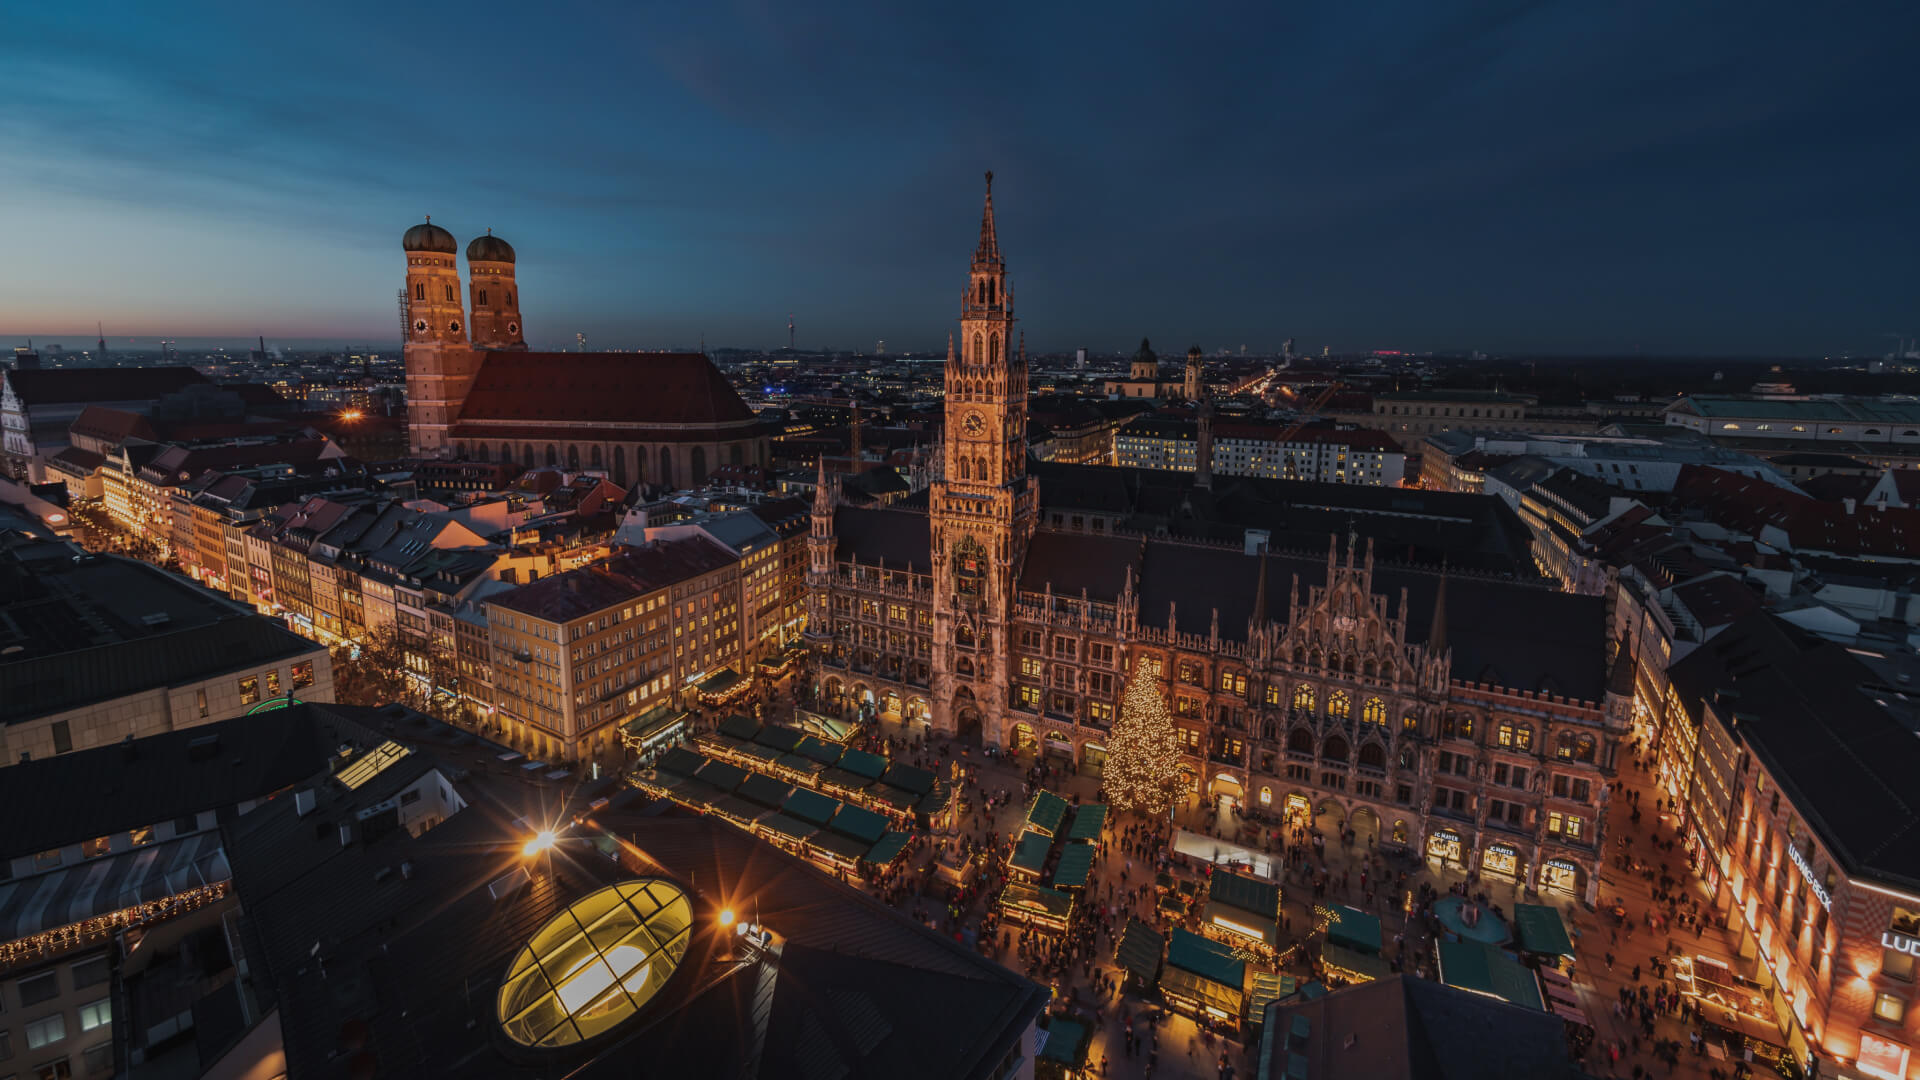 Top view of Marienplatz in Munich by night